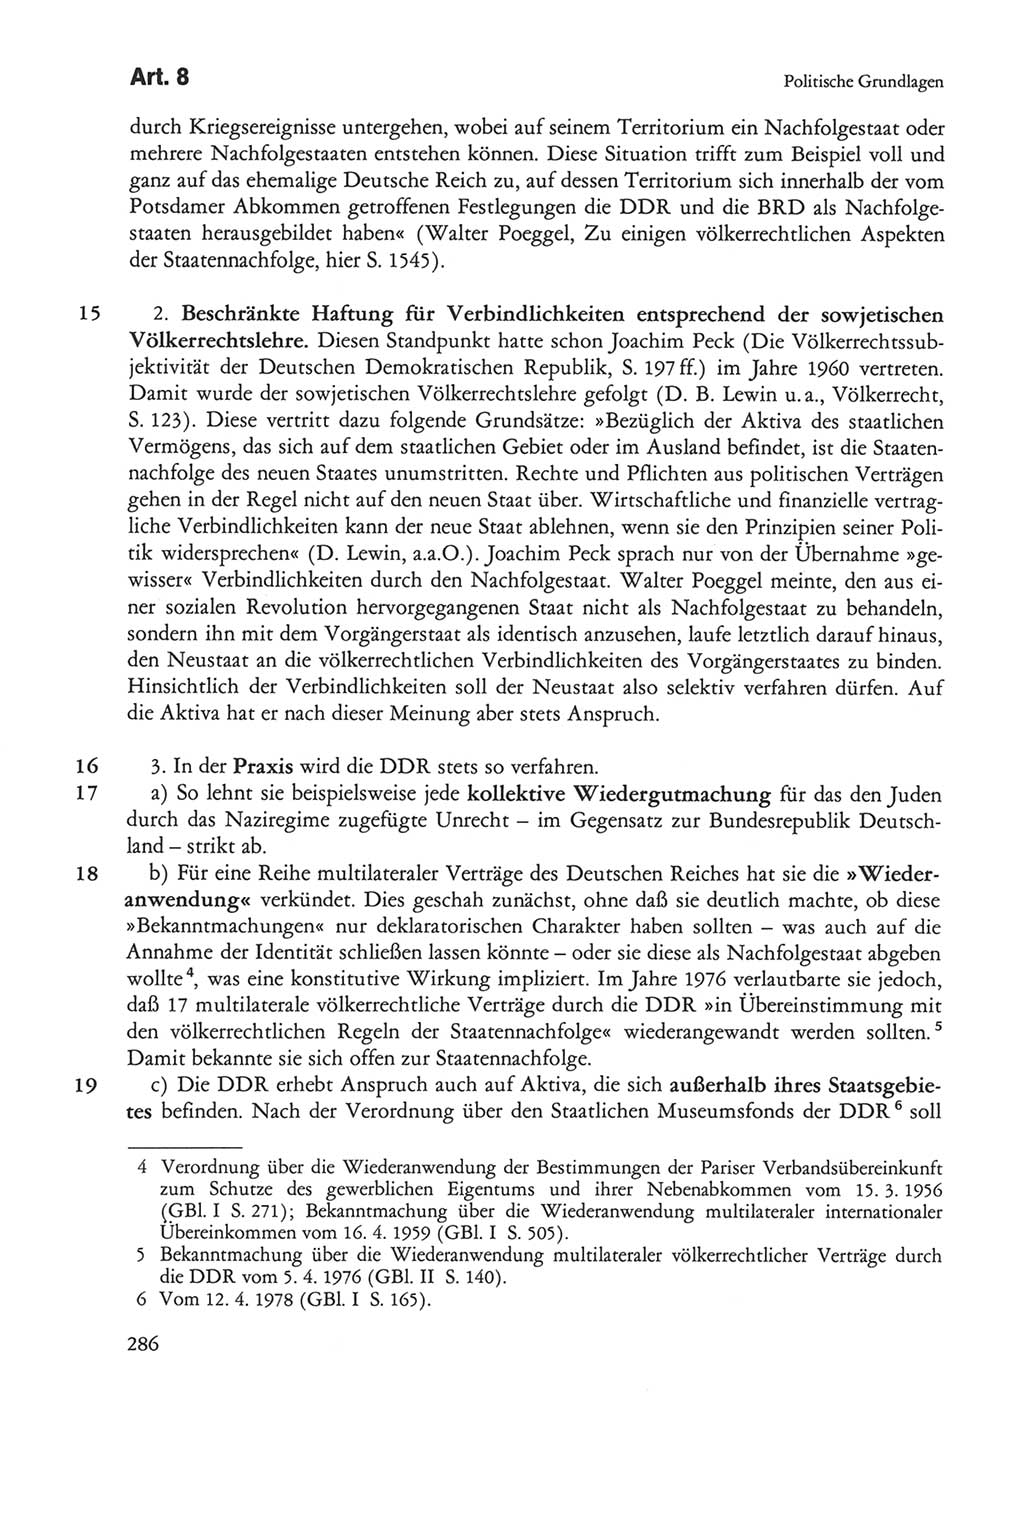 Die sozialistische Verfassung der Deutschen Demokratischen Republik (DDR), Kommentar 1982, Seite 286 (Soz. Verf. DDR Komm. 1982, S. 286)